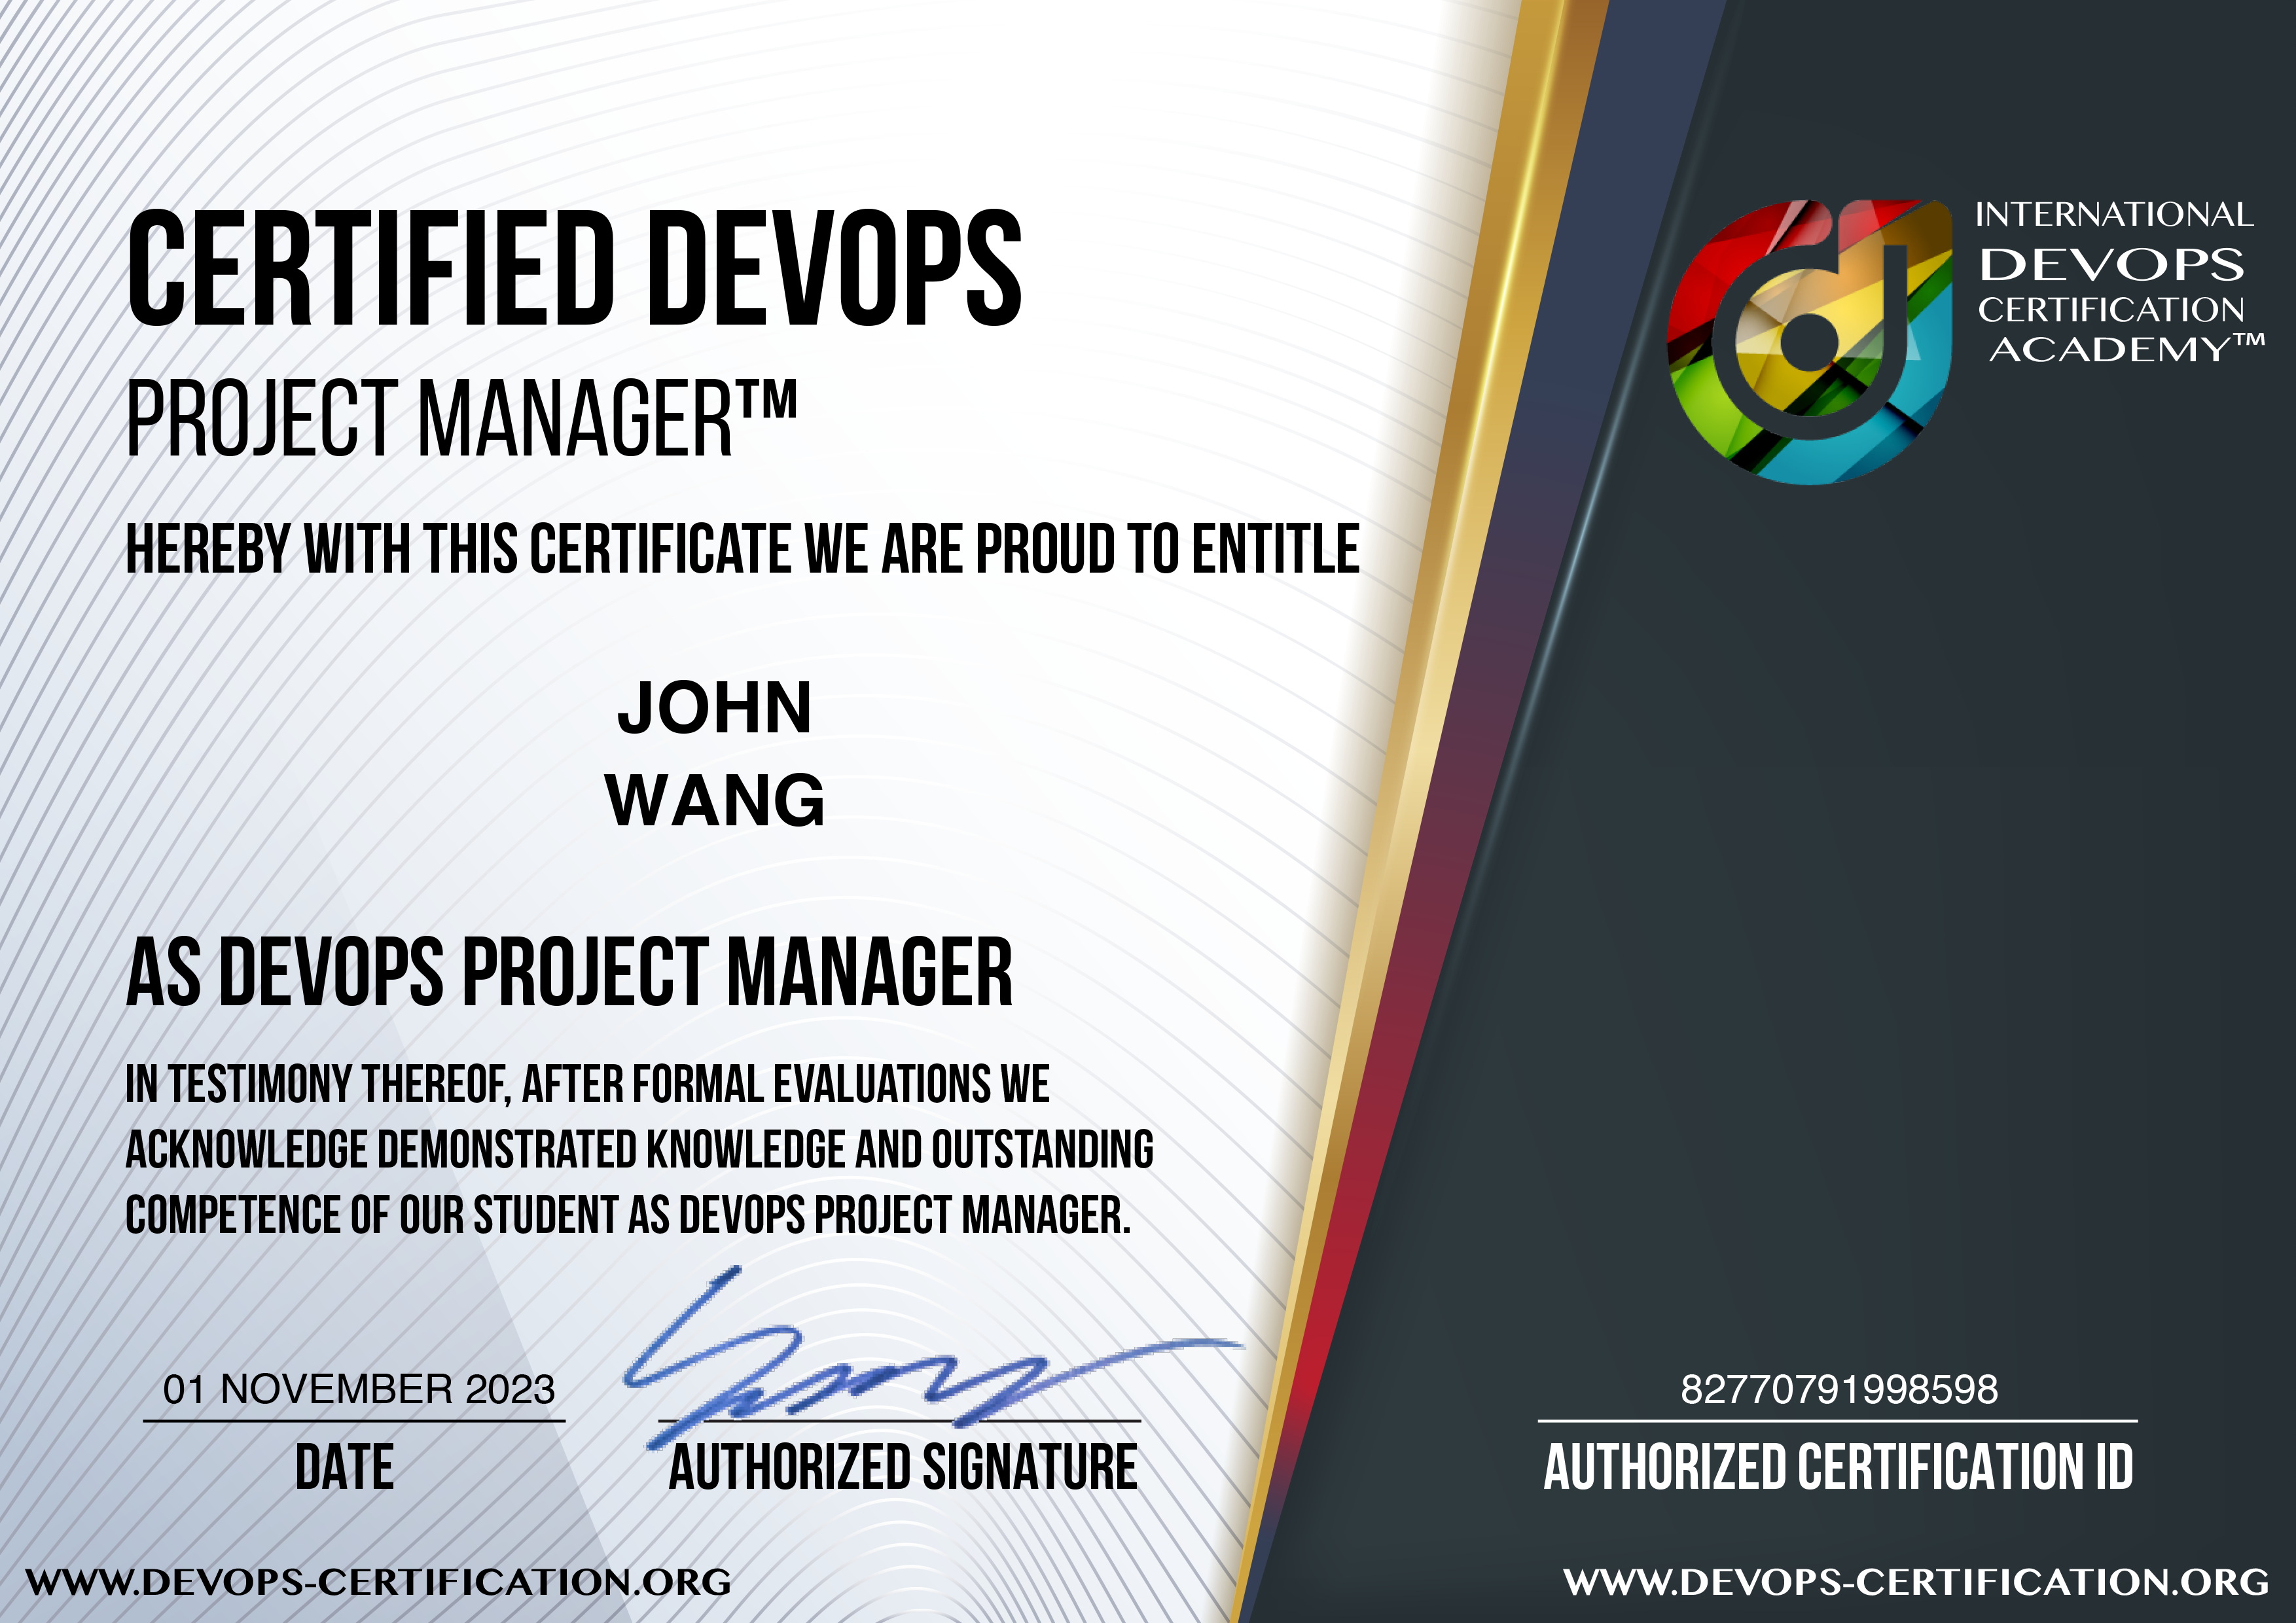 John's Certified DevOps Project Manager (DevOps-PM) from DevOps Academy